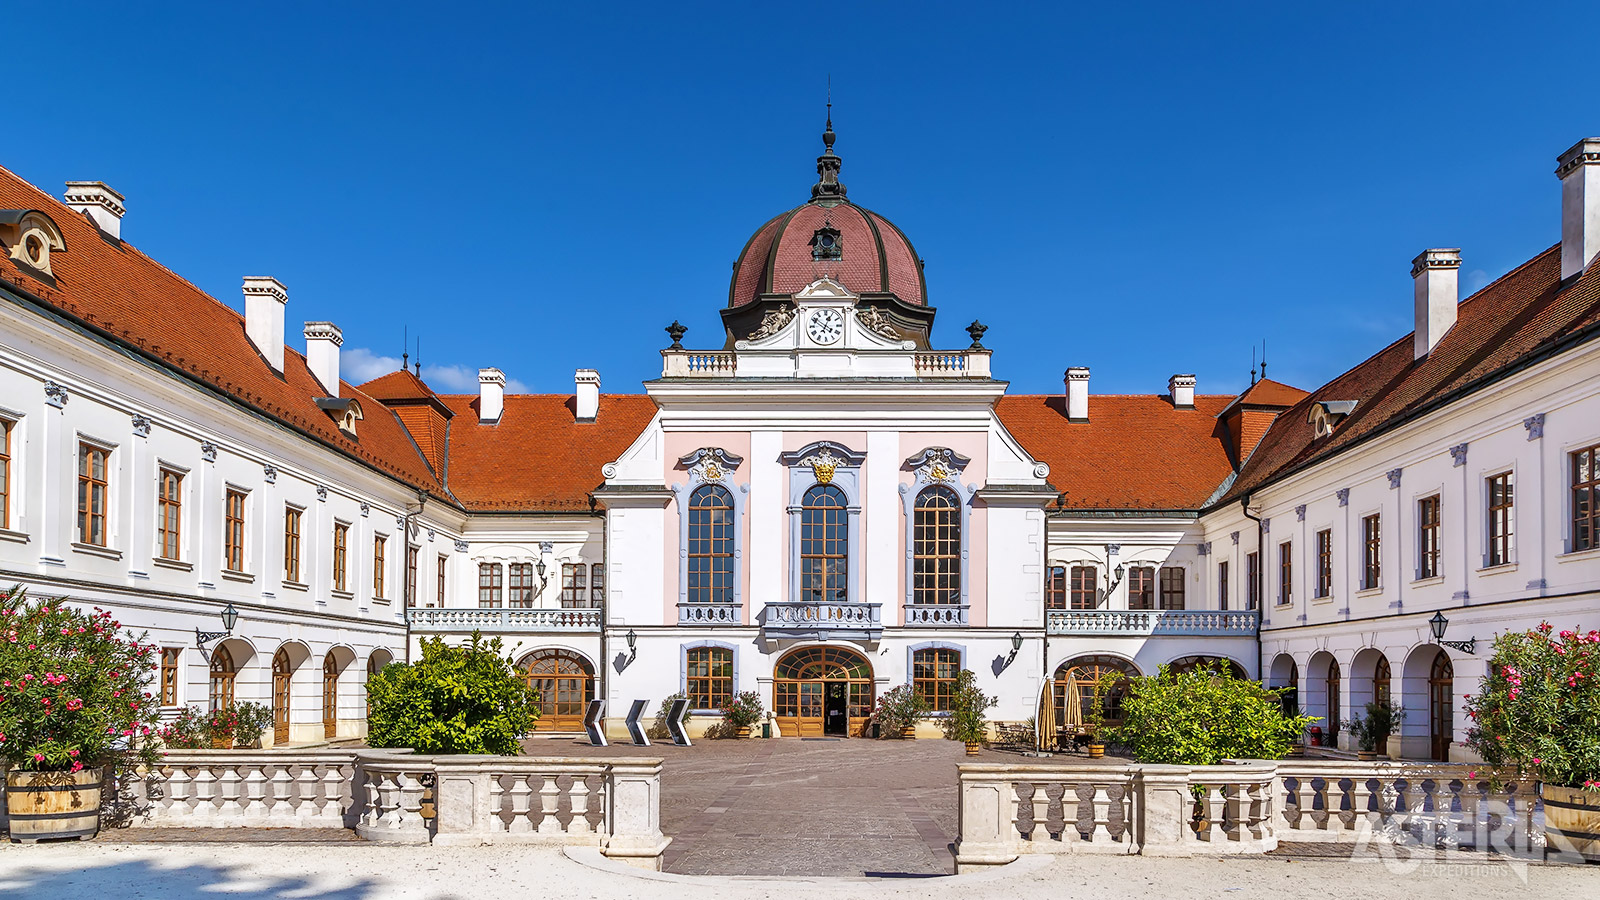 Het Gödöllö paleis Grassalkovich is het grootste paleis in barokstijl van Hongarije en na dat van Versailles het 2e grootste in de wereld